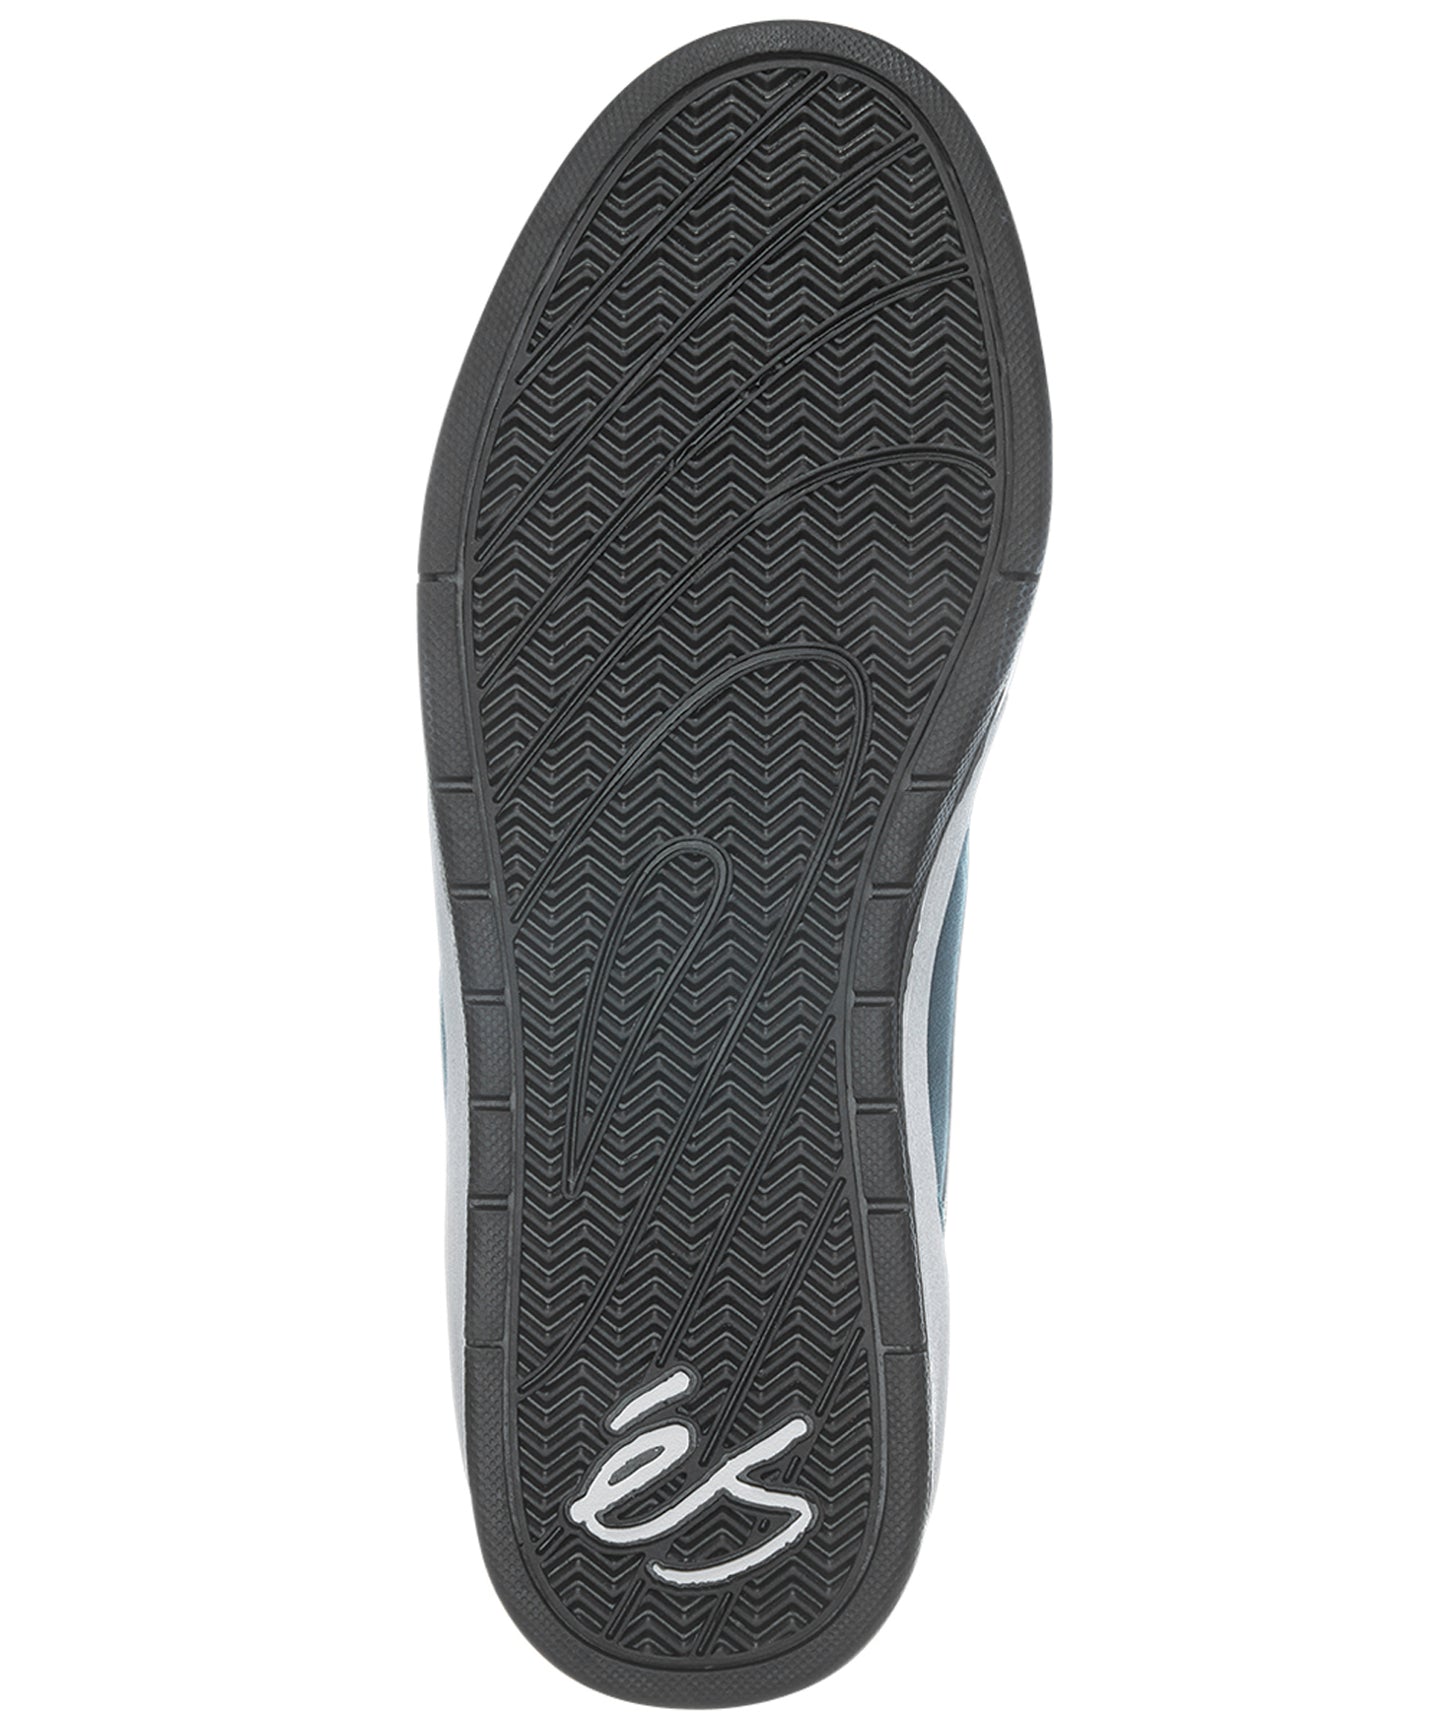 és-zapatillas-swift macba-la zapatilla de skate definitiva-suelas y lengüeta de espuma-Suela de goma sti-protecciones ollie